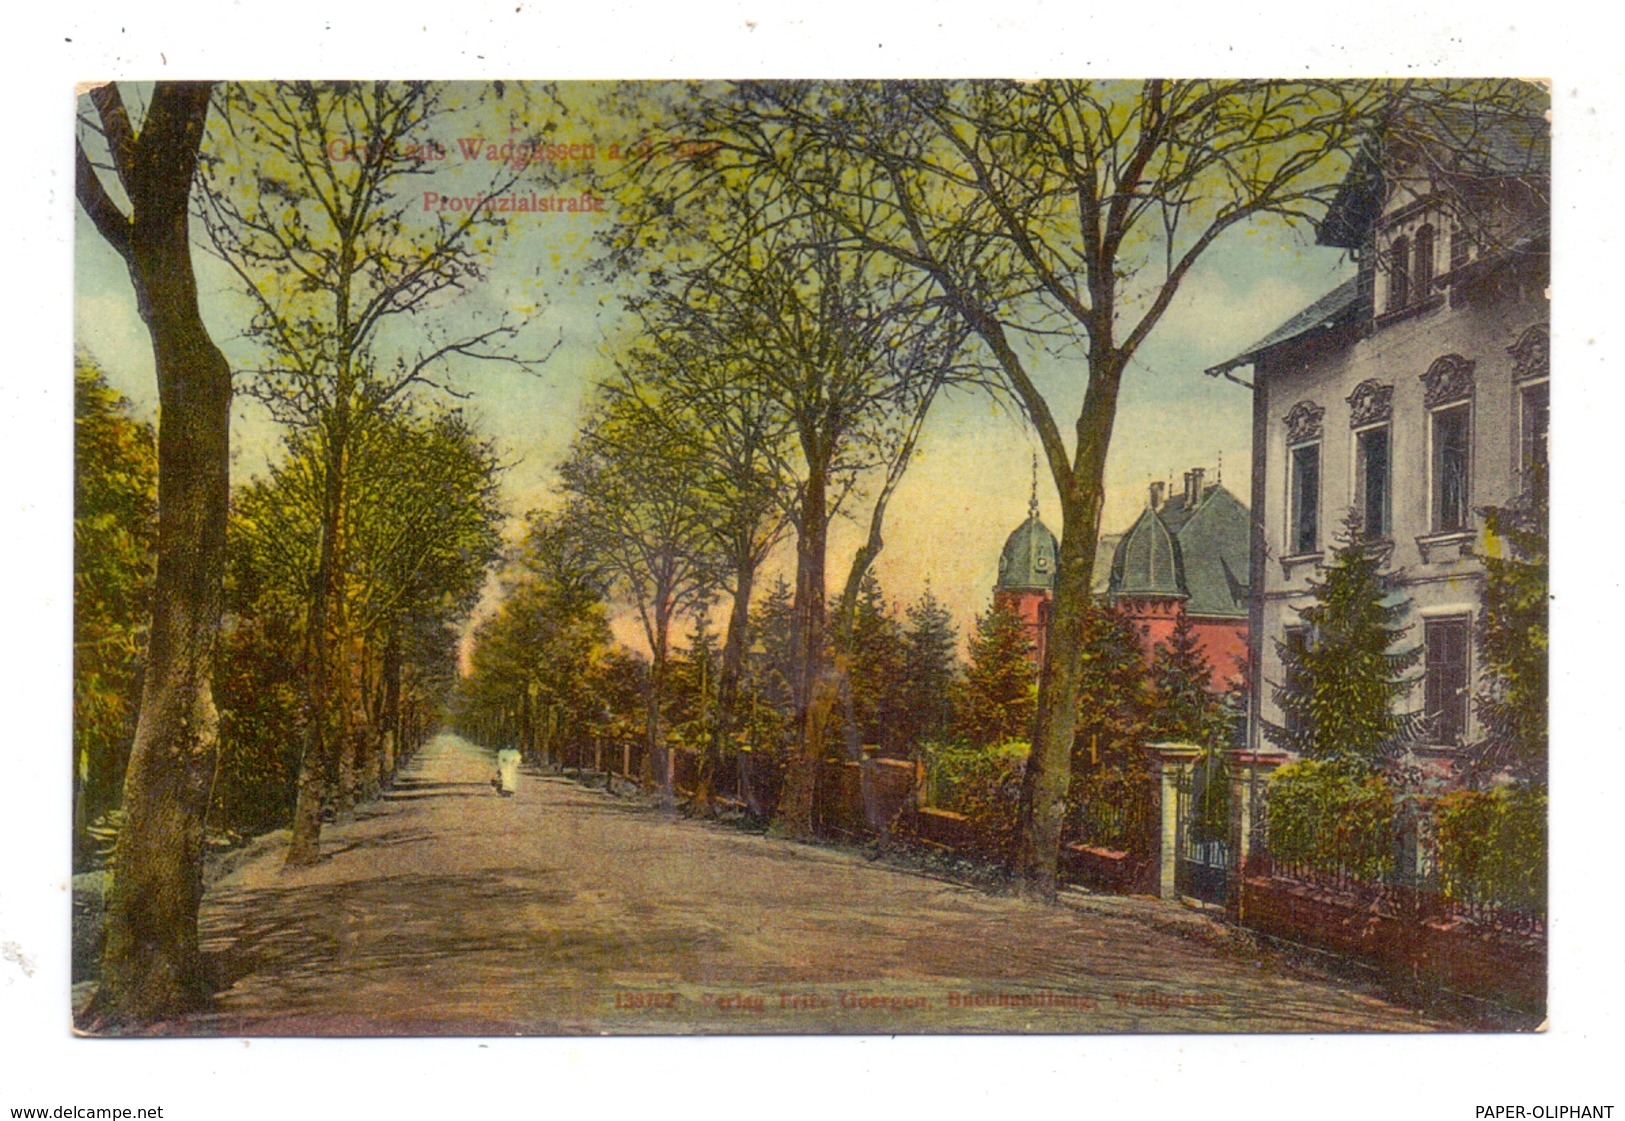 6633 WADGASSEN, Provinzialstrasse, 1919 - Kreis Saarlouis